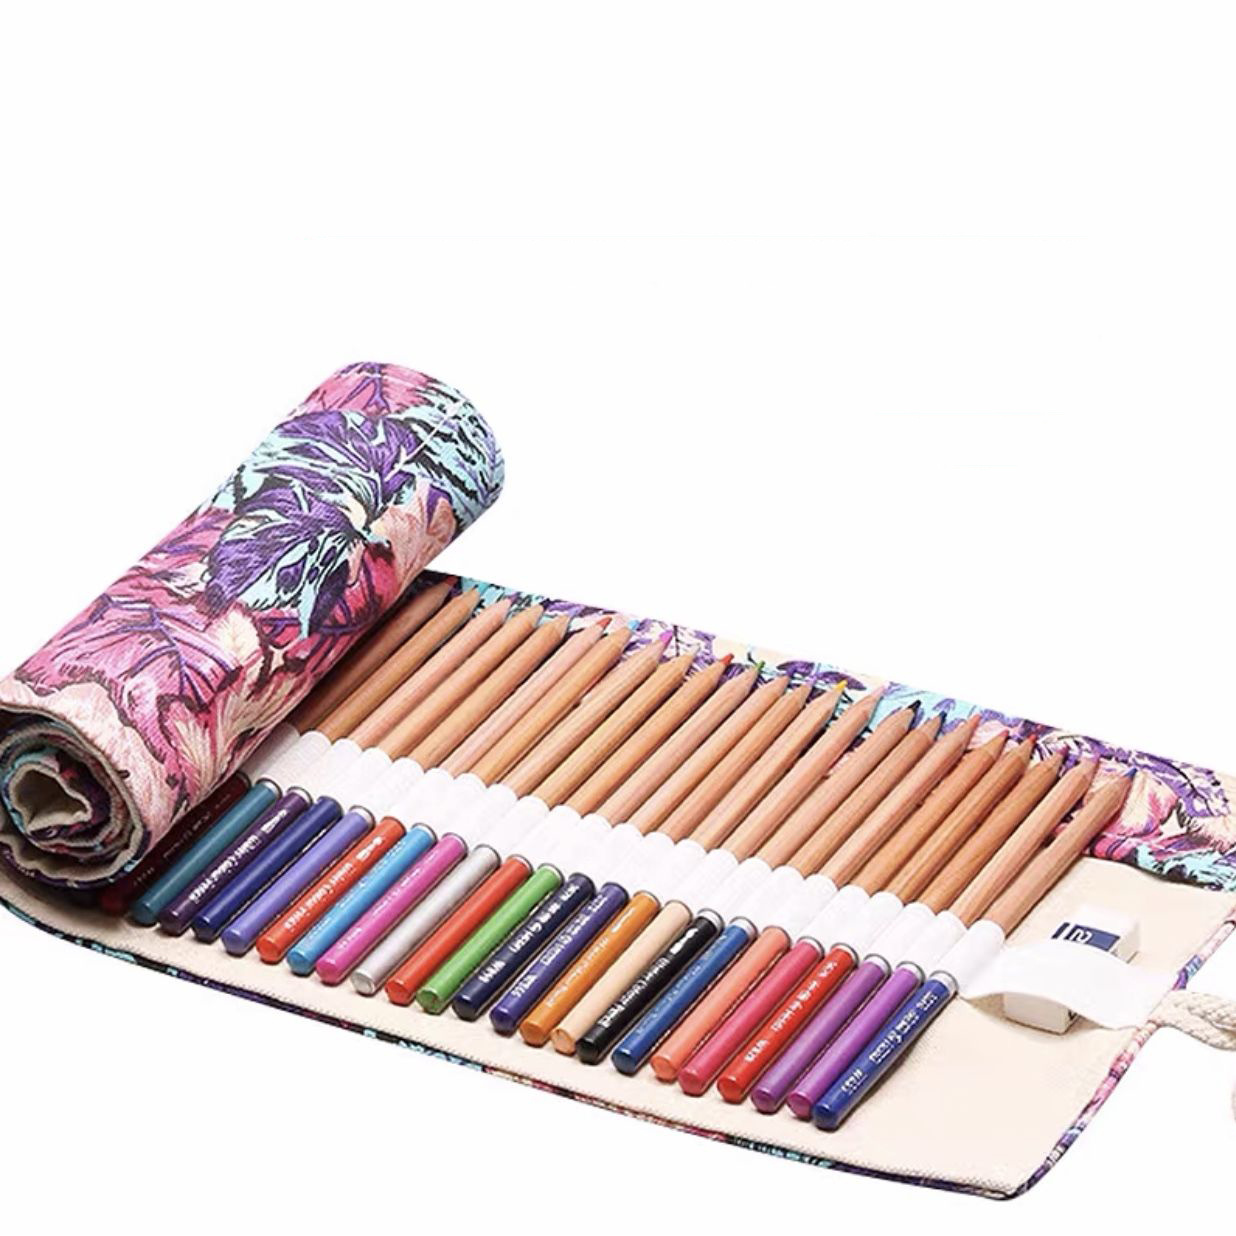  Rollup Color Pencils Bag Pencil case Colored Pencils